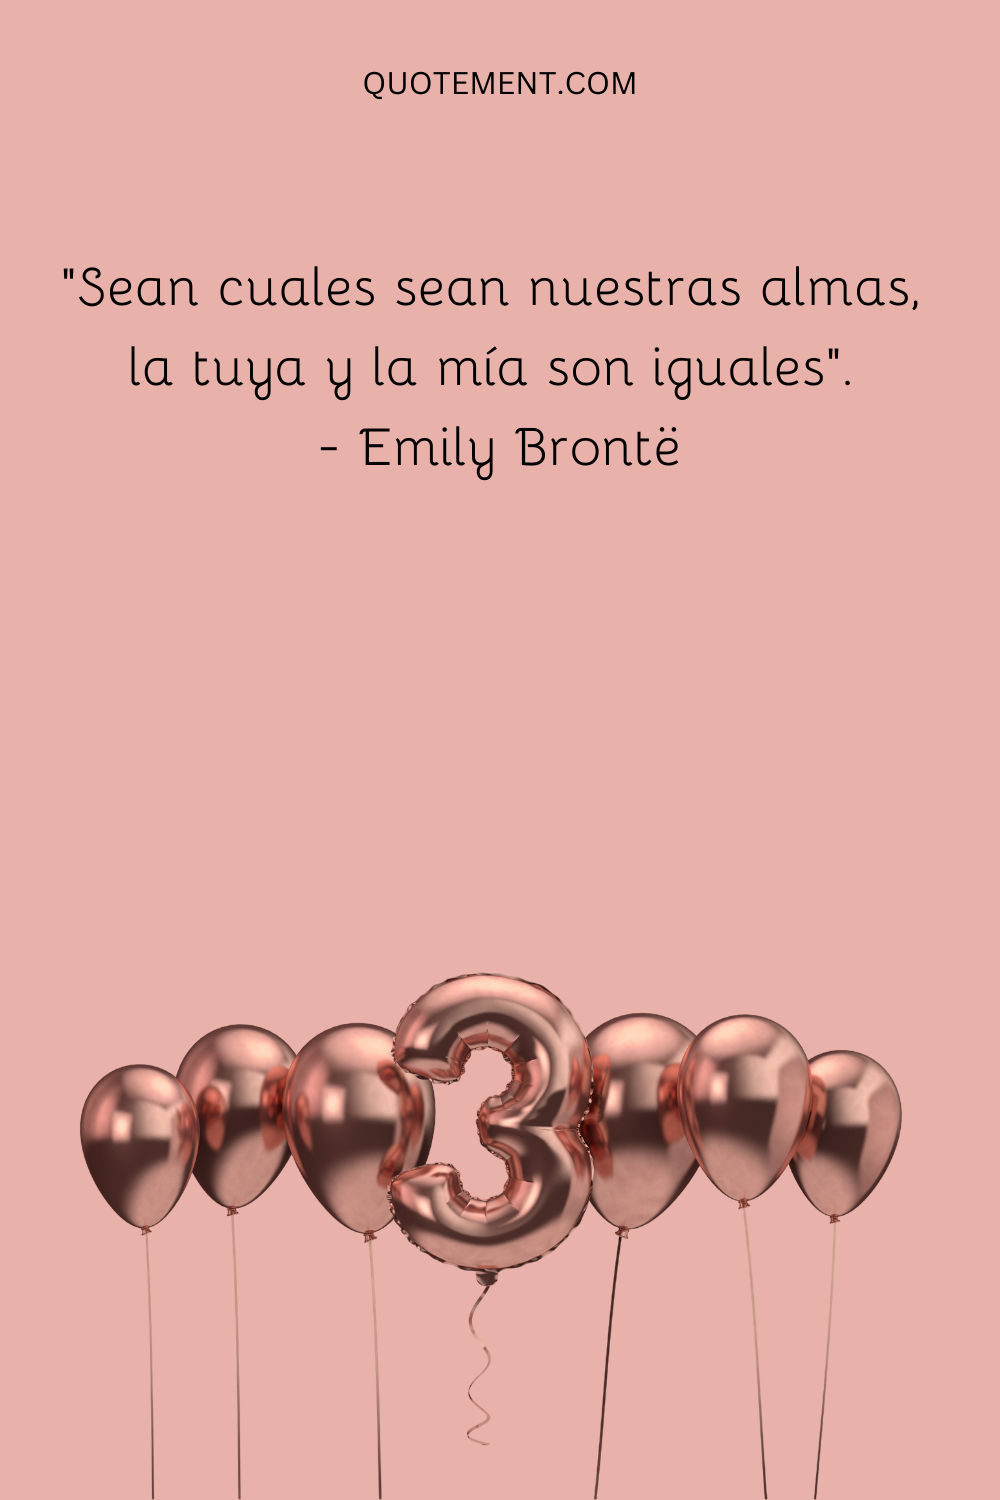 "Sean cuales sean nuestras almas, la tuya y la mía son iguales". - Emily Brontë